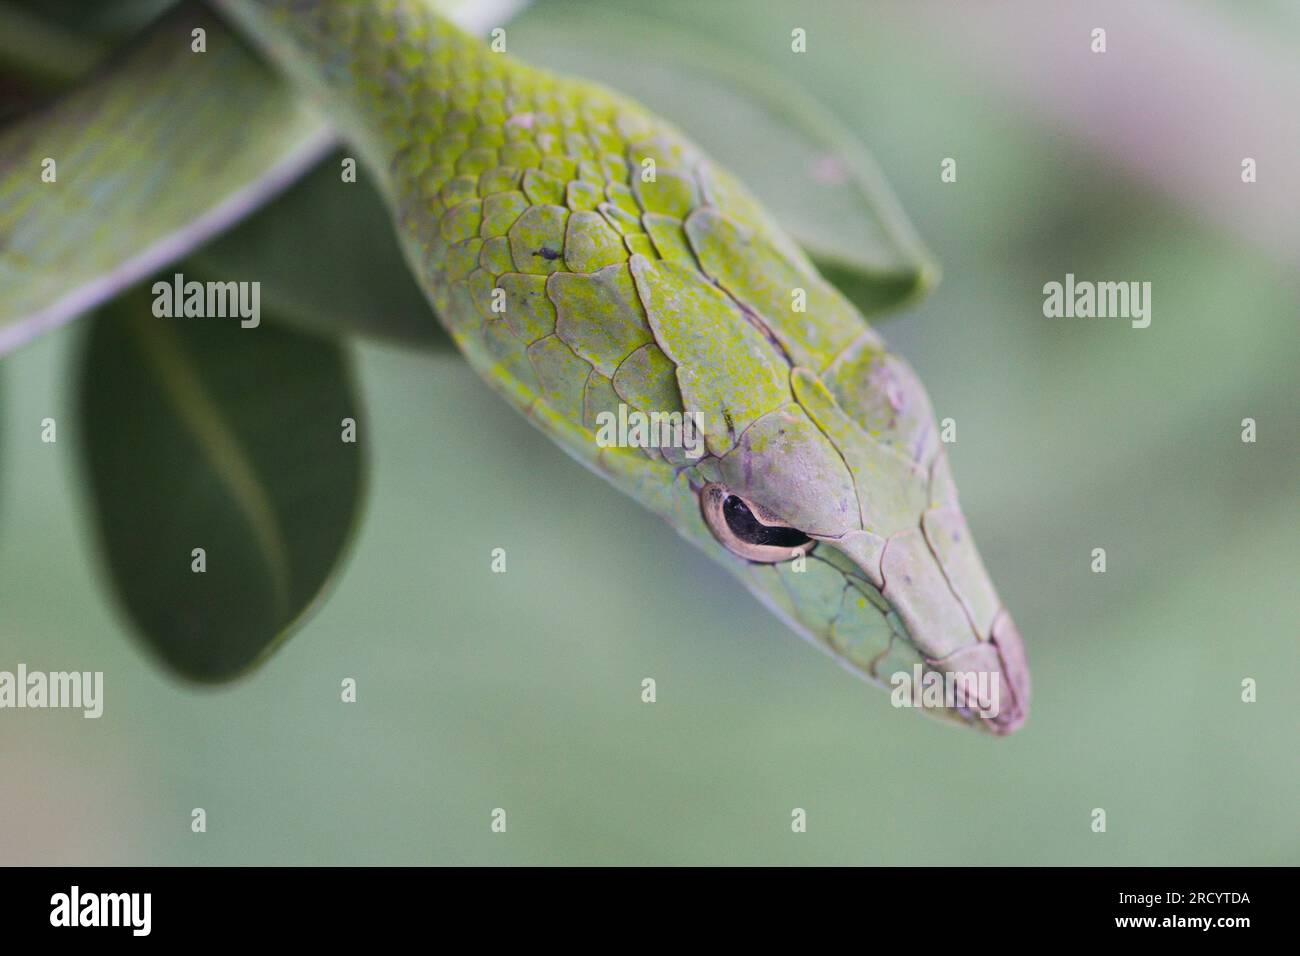 Oriental Whip Snake (Ahaetulla prasina), i nomi comuni includono il serpente di vite asiatico, fotografato a Krabi in Thailandia Foto Stock